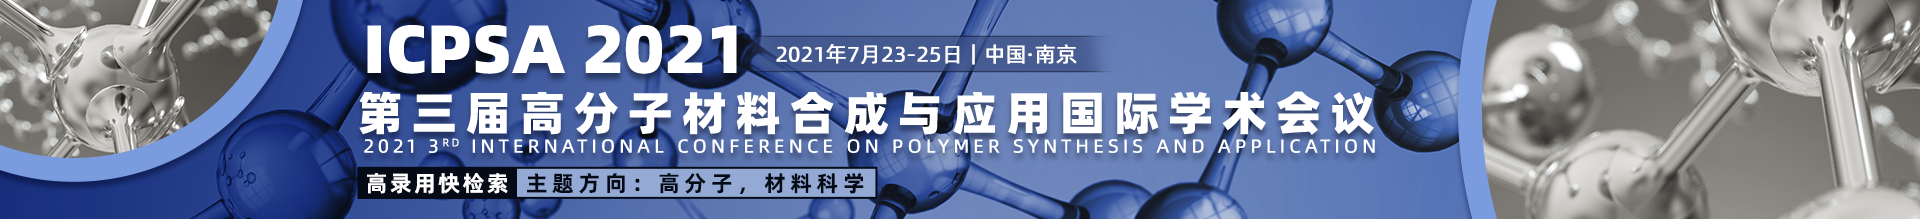 7月-南京-ICPSA2021会议云思banner-何雪仪-20210426.png